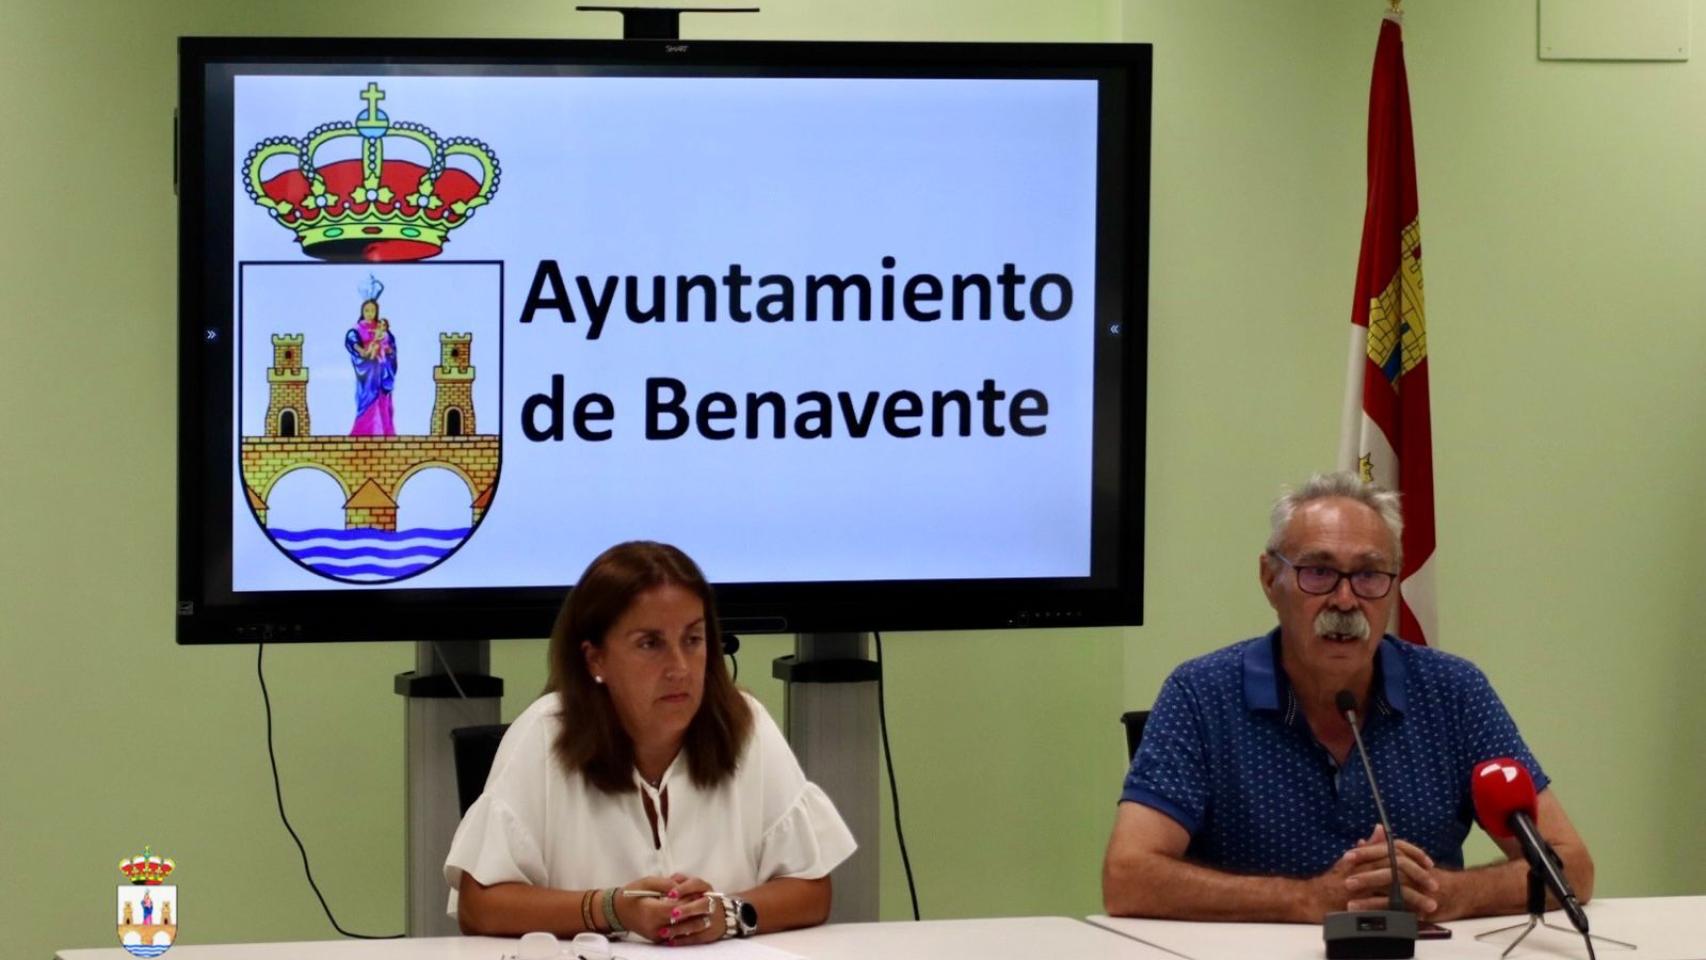 La concejala de Ferias, Sandra Otero, junto con el concejal de Turismo, José Mariño, han presentado esta mañana en el Ayuntamiento de Benavente la programación de las Ferias de Septiembre